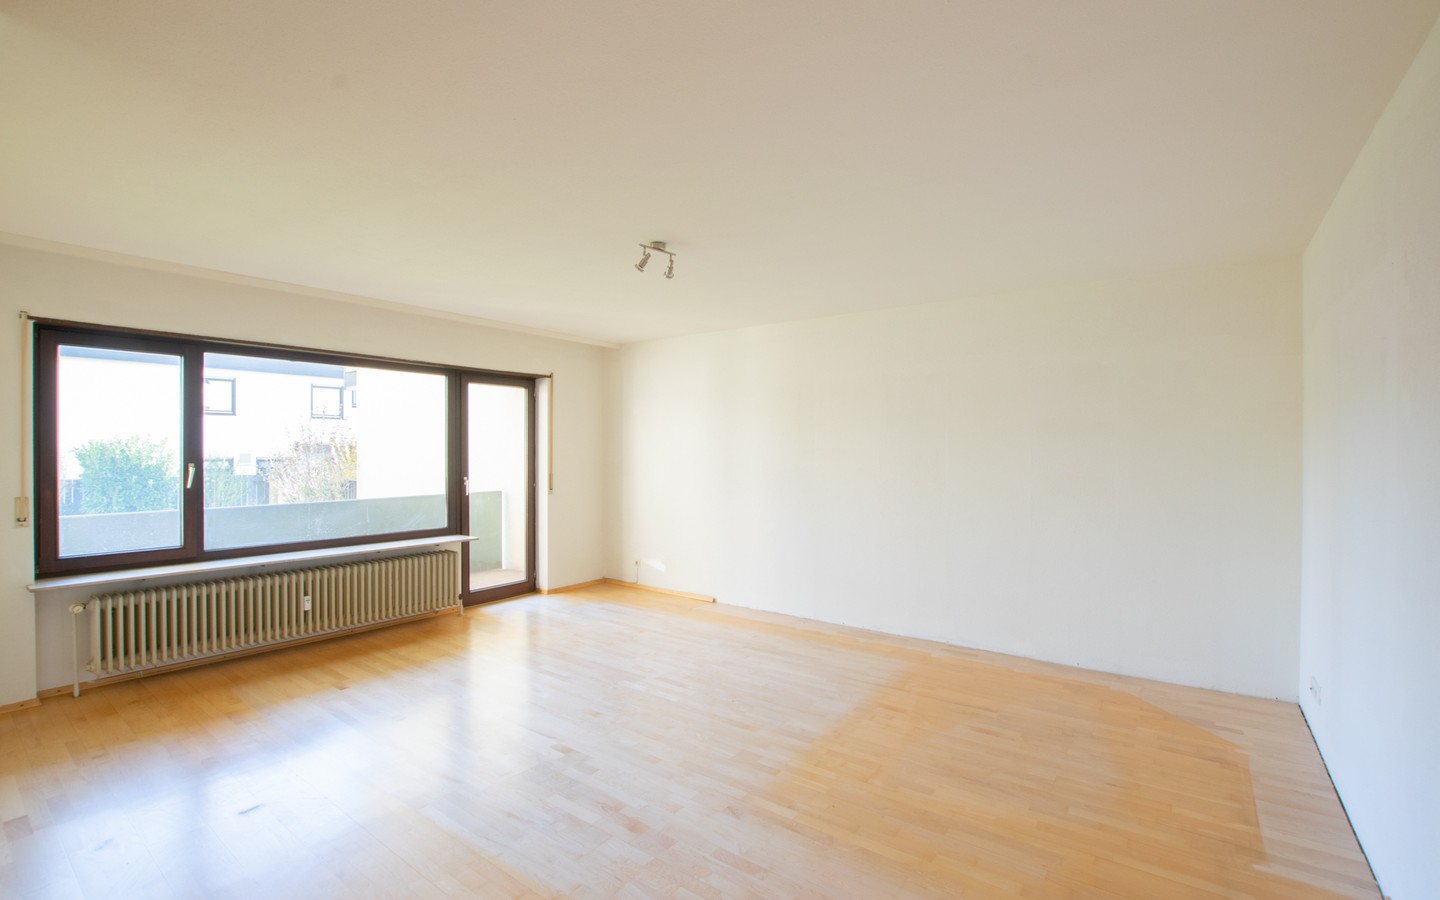 Wohnbereich - Ladenburg: Außergewöhnliche 3,5-Zimmerwohnung mit 2 Balkonen in ruhiger Wohnlage